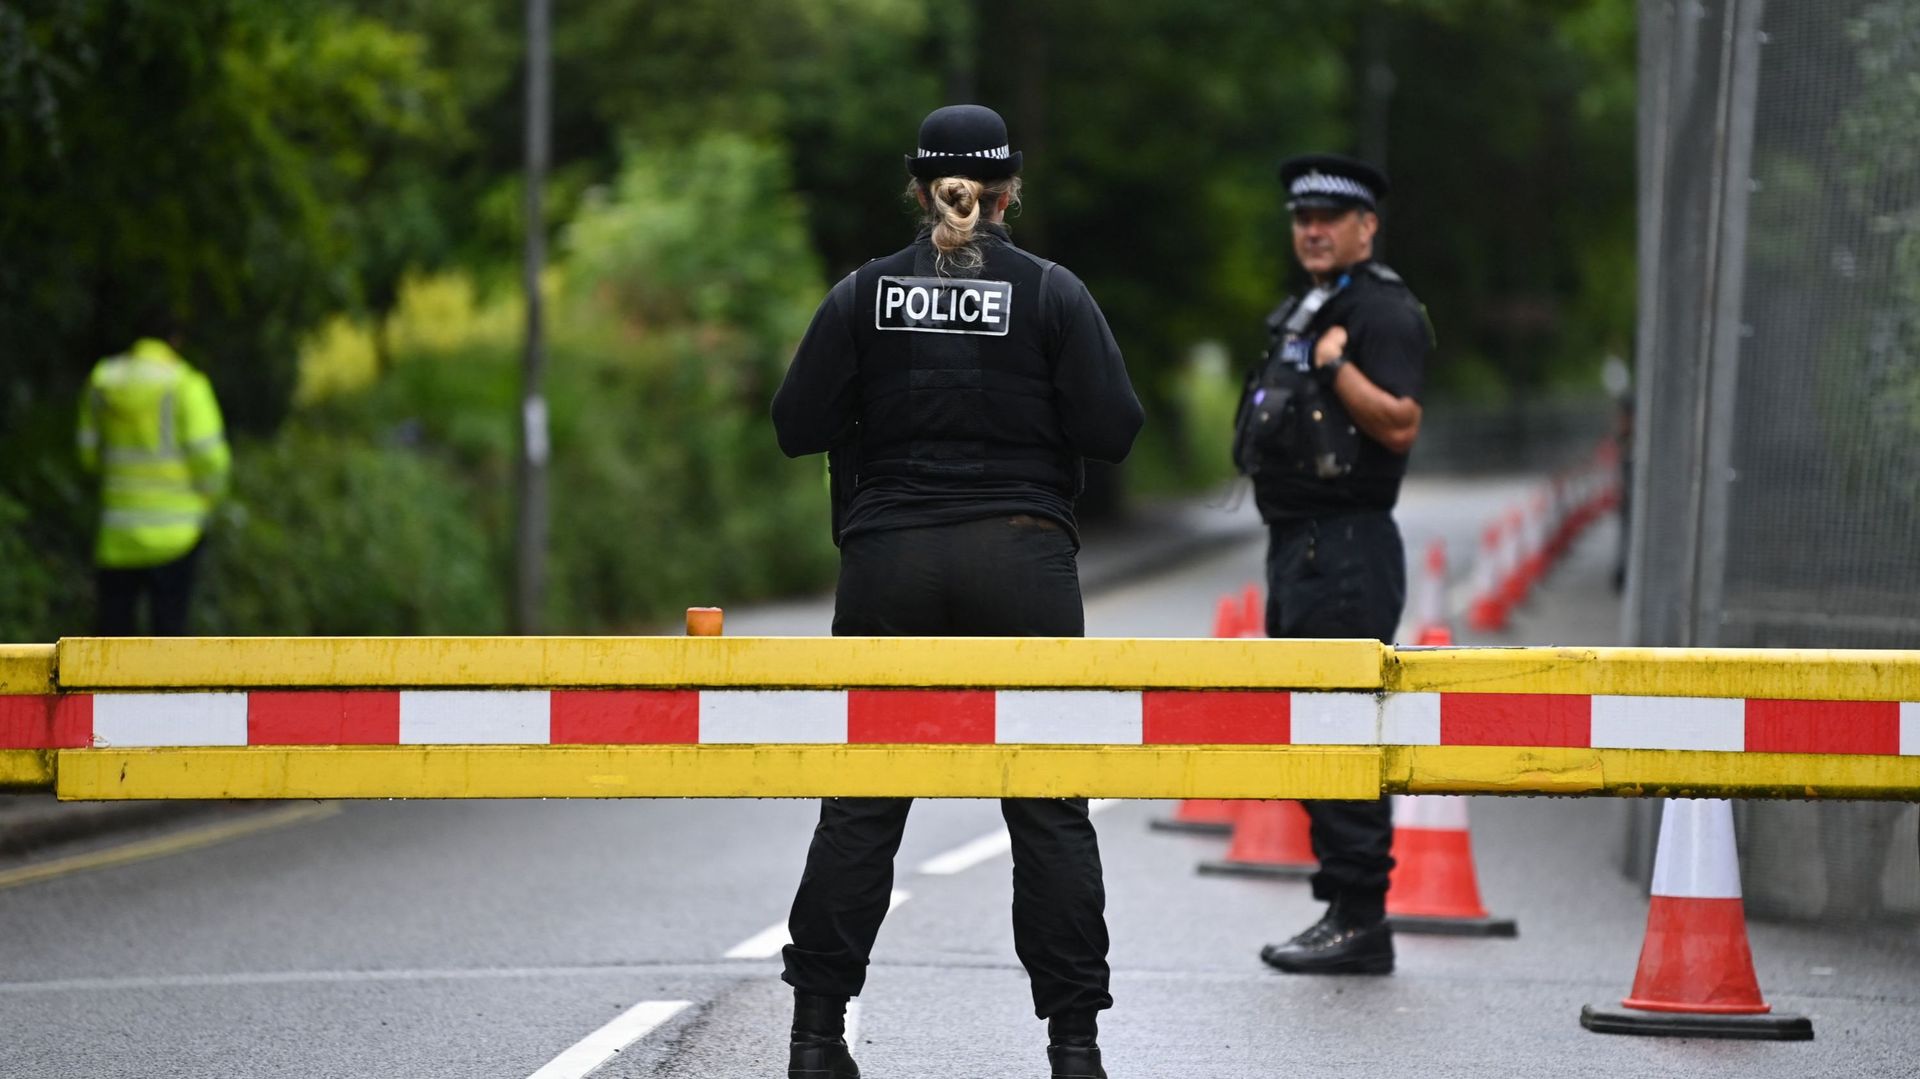 La police de Merseyside a déclaré que l'explosion ne semblait pas devoir être qualifiée de terroriste. Image d'illustration.